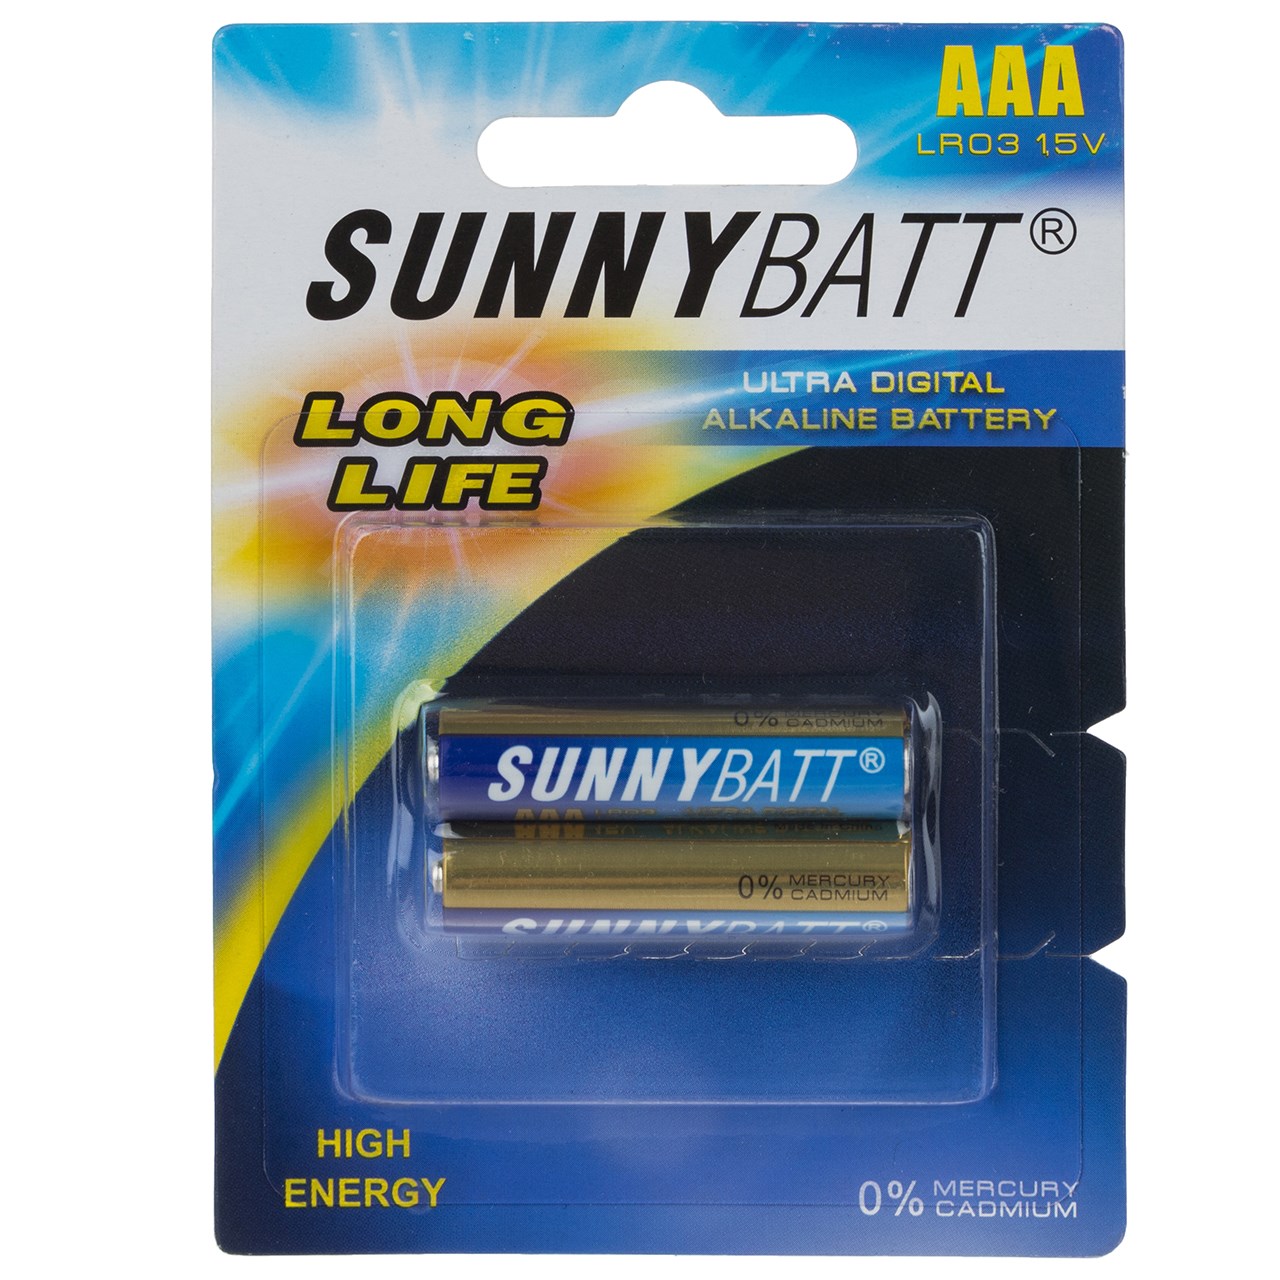 باتری نیم قلمی سانی بت مدل Ultra Digital Alkaline بسته 2 عددی